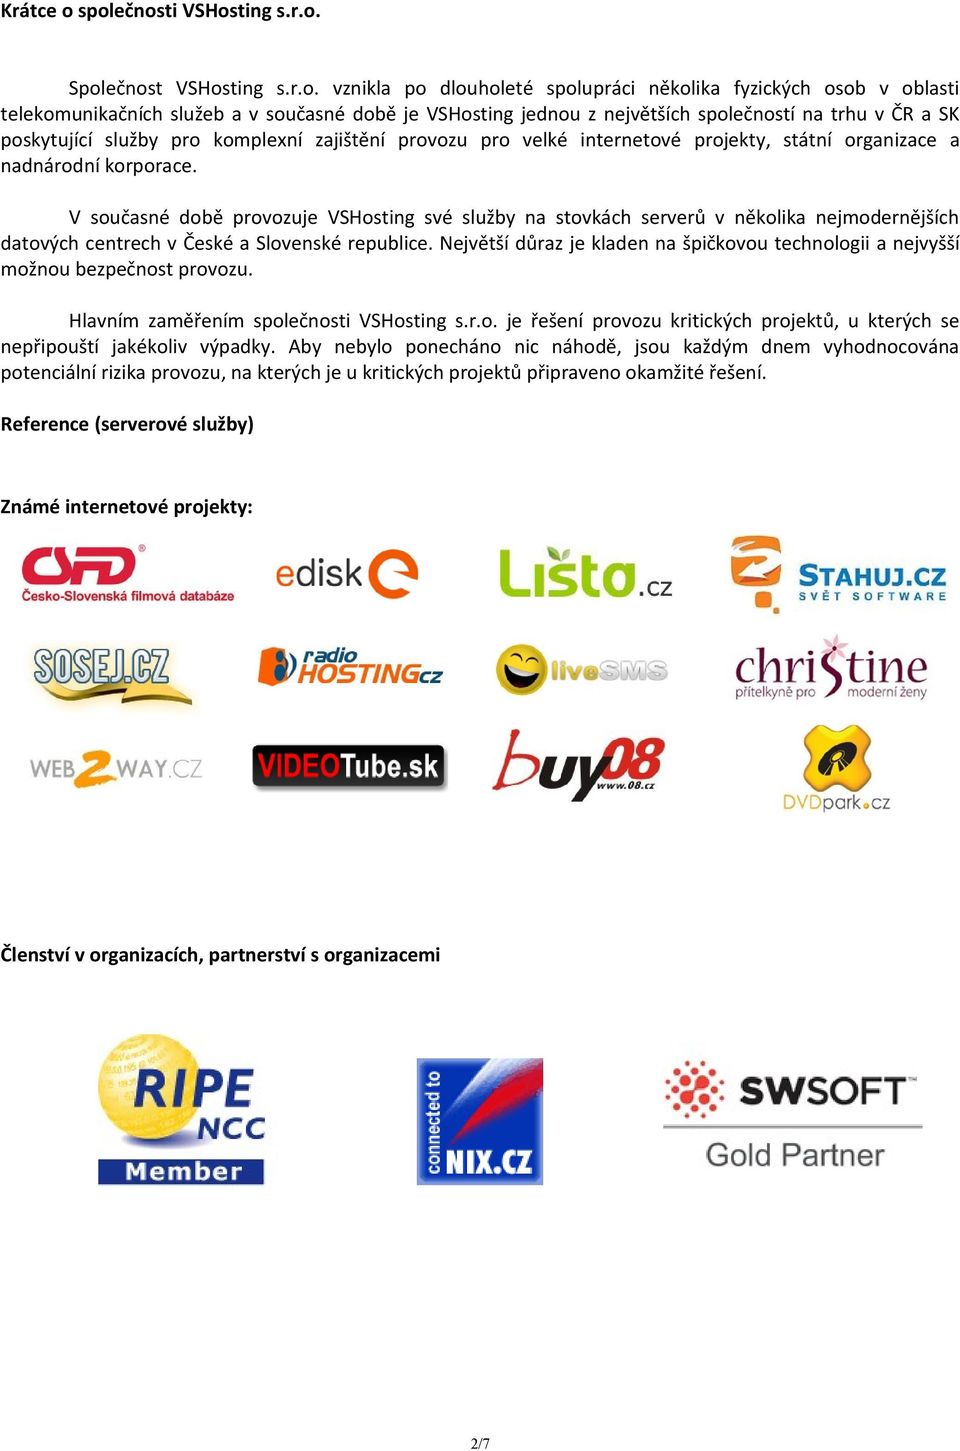 společností na trhu v ČR a SK poskytující služby pro komplexní zajištění provozu pro velké internetové projekty, státní organizace a nadnárodní korporace.